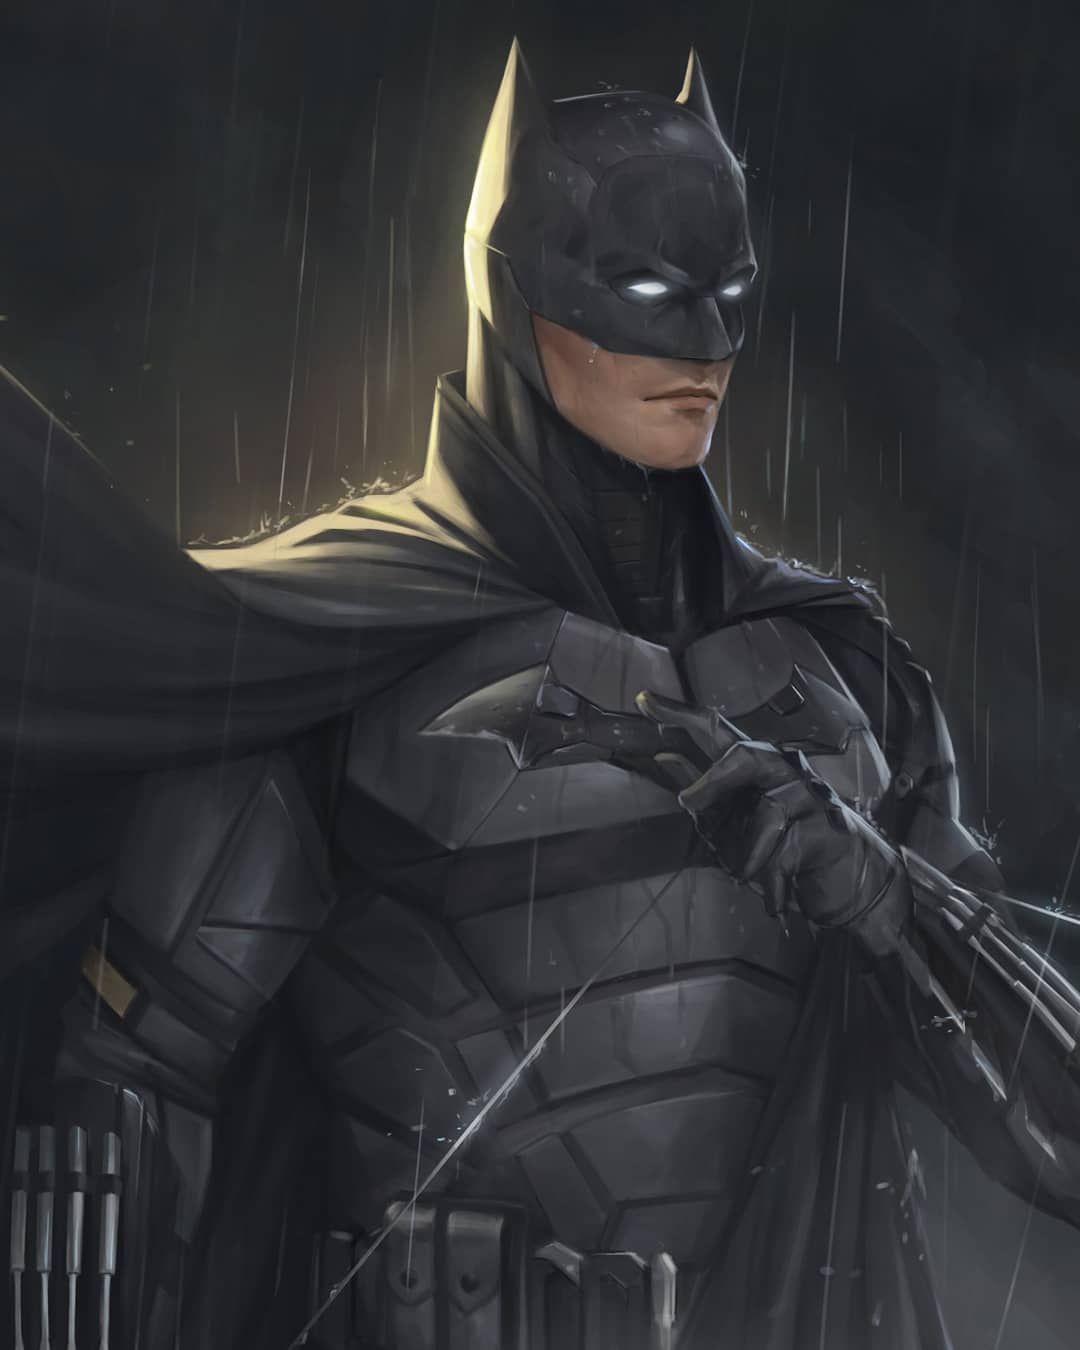 Supersuits and Batsuits. Batman